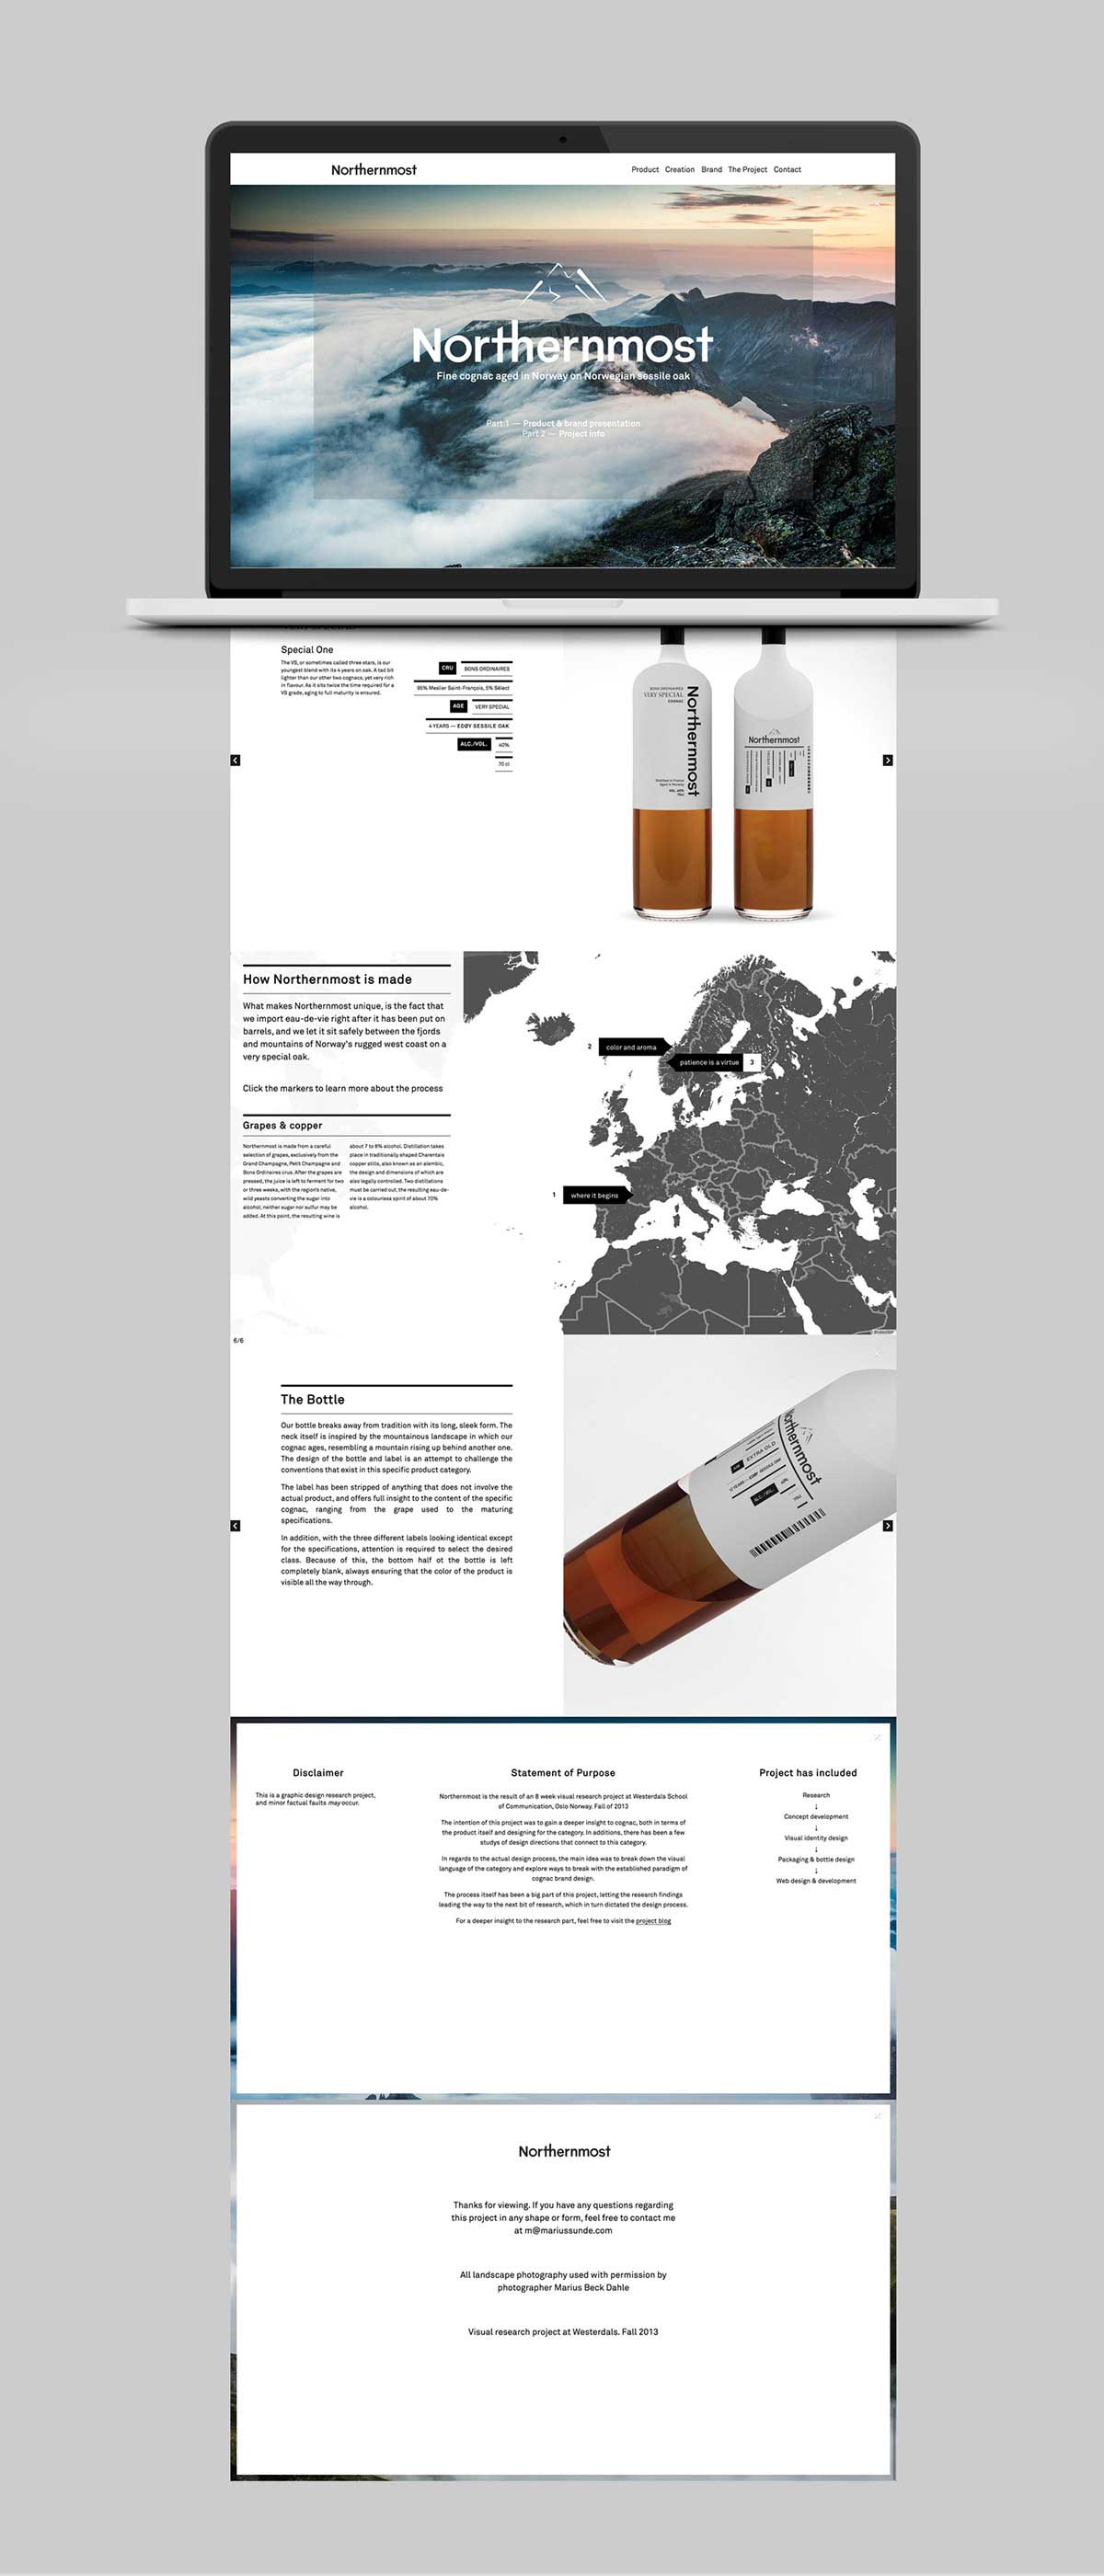  挪威白兰地酒品牌网站